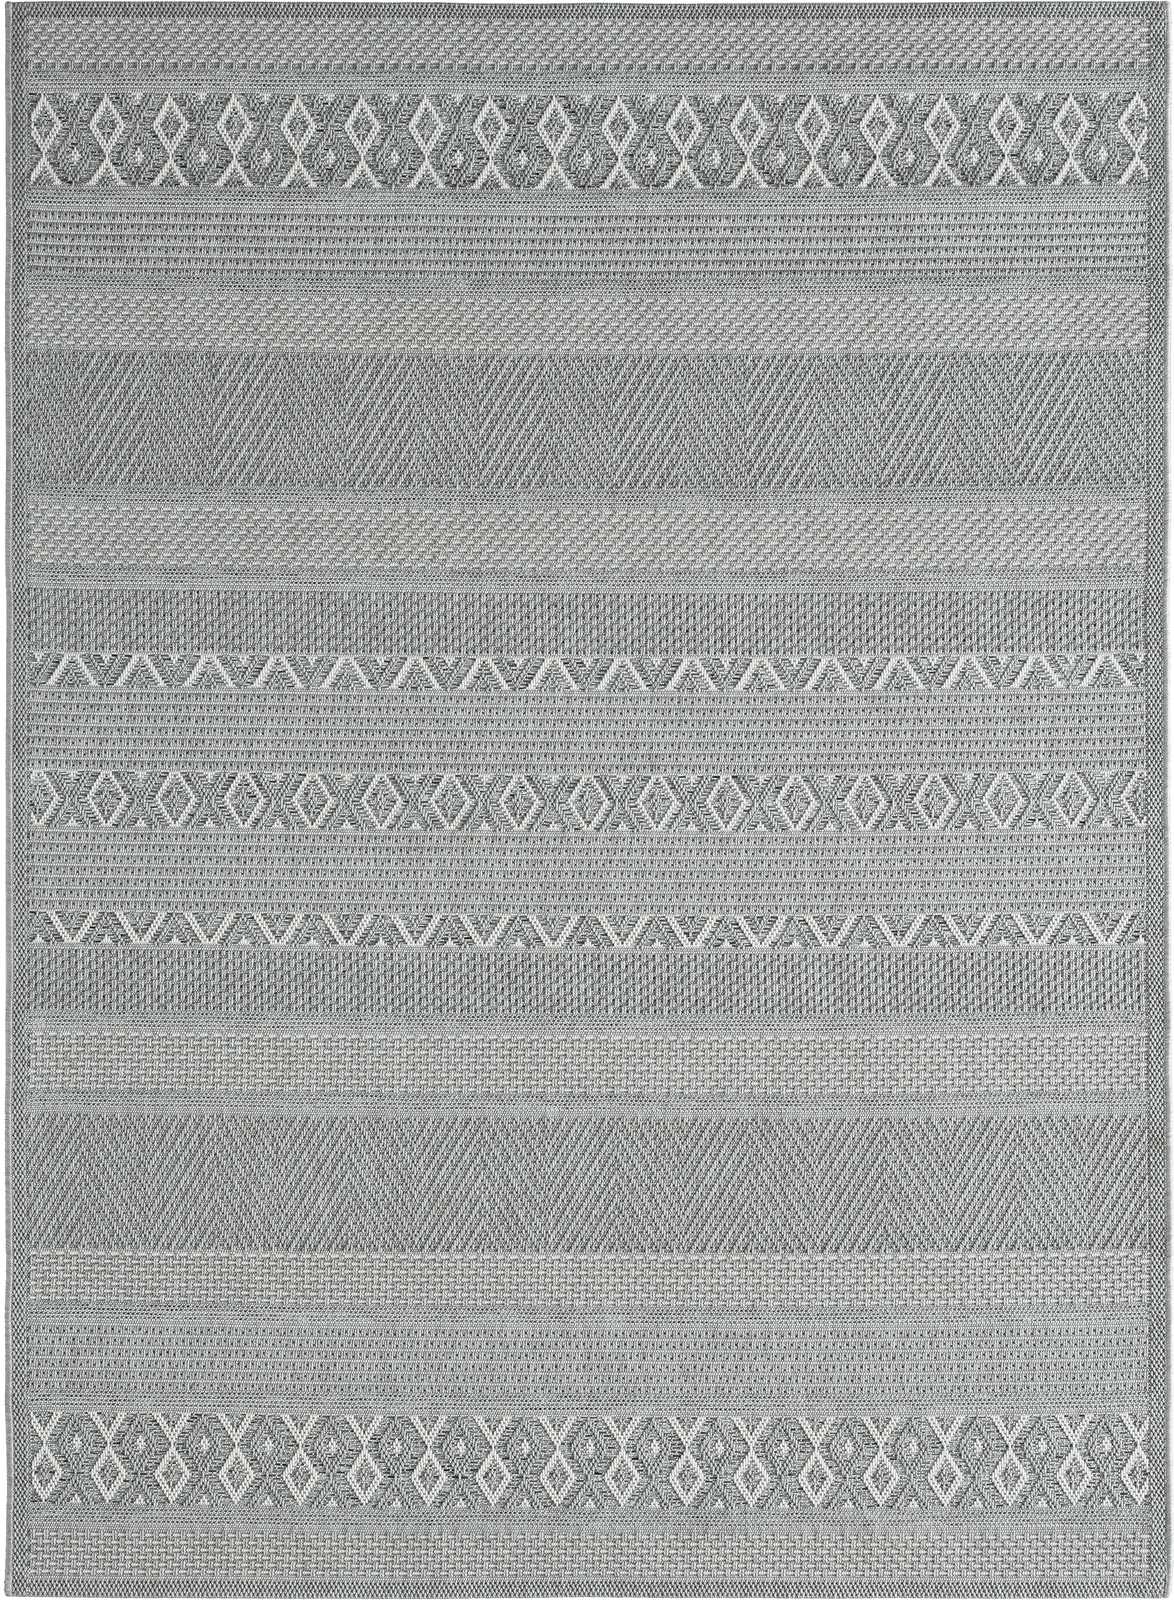             Buitenkleed met eenvoudig patroon in grijs - 200 x 140 cm
        